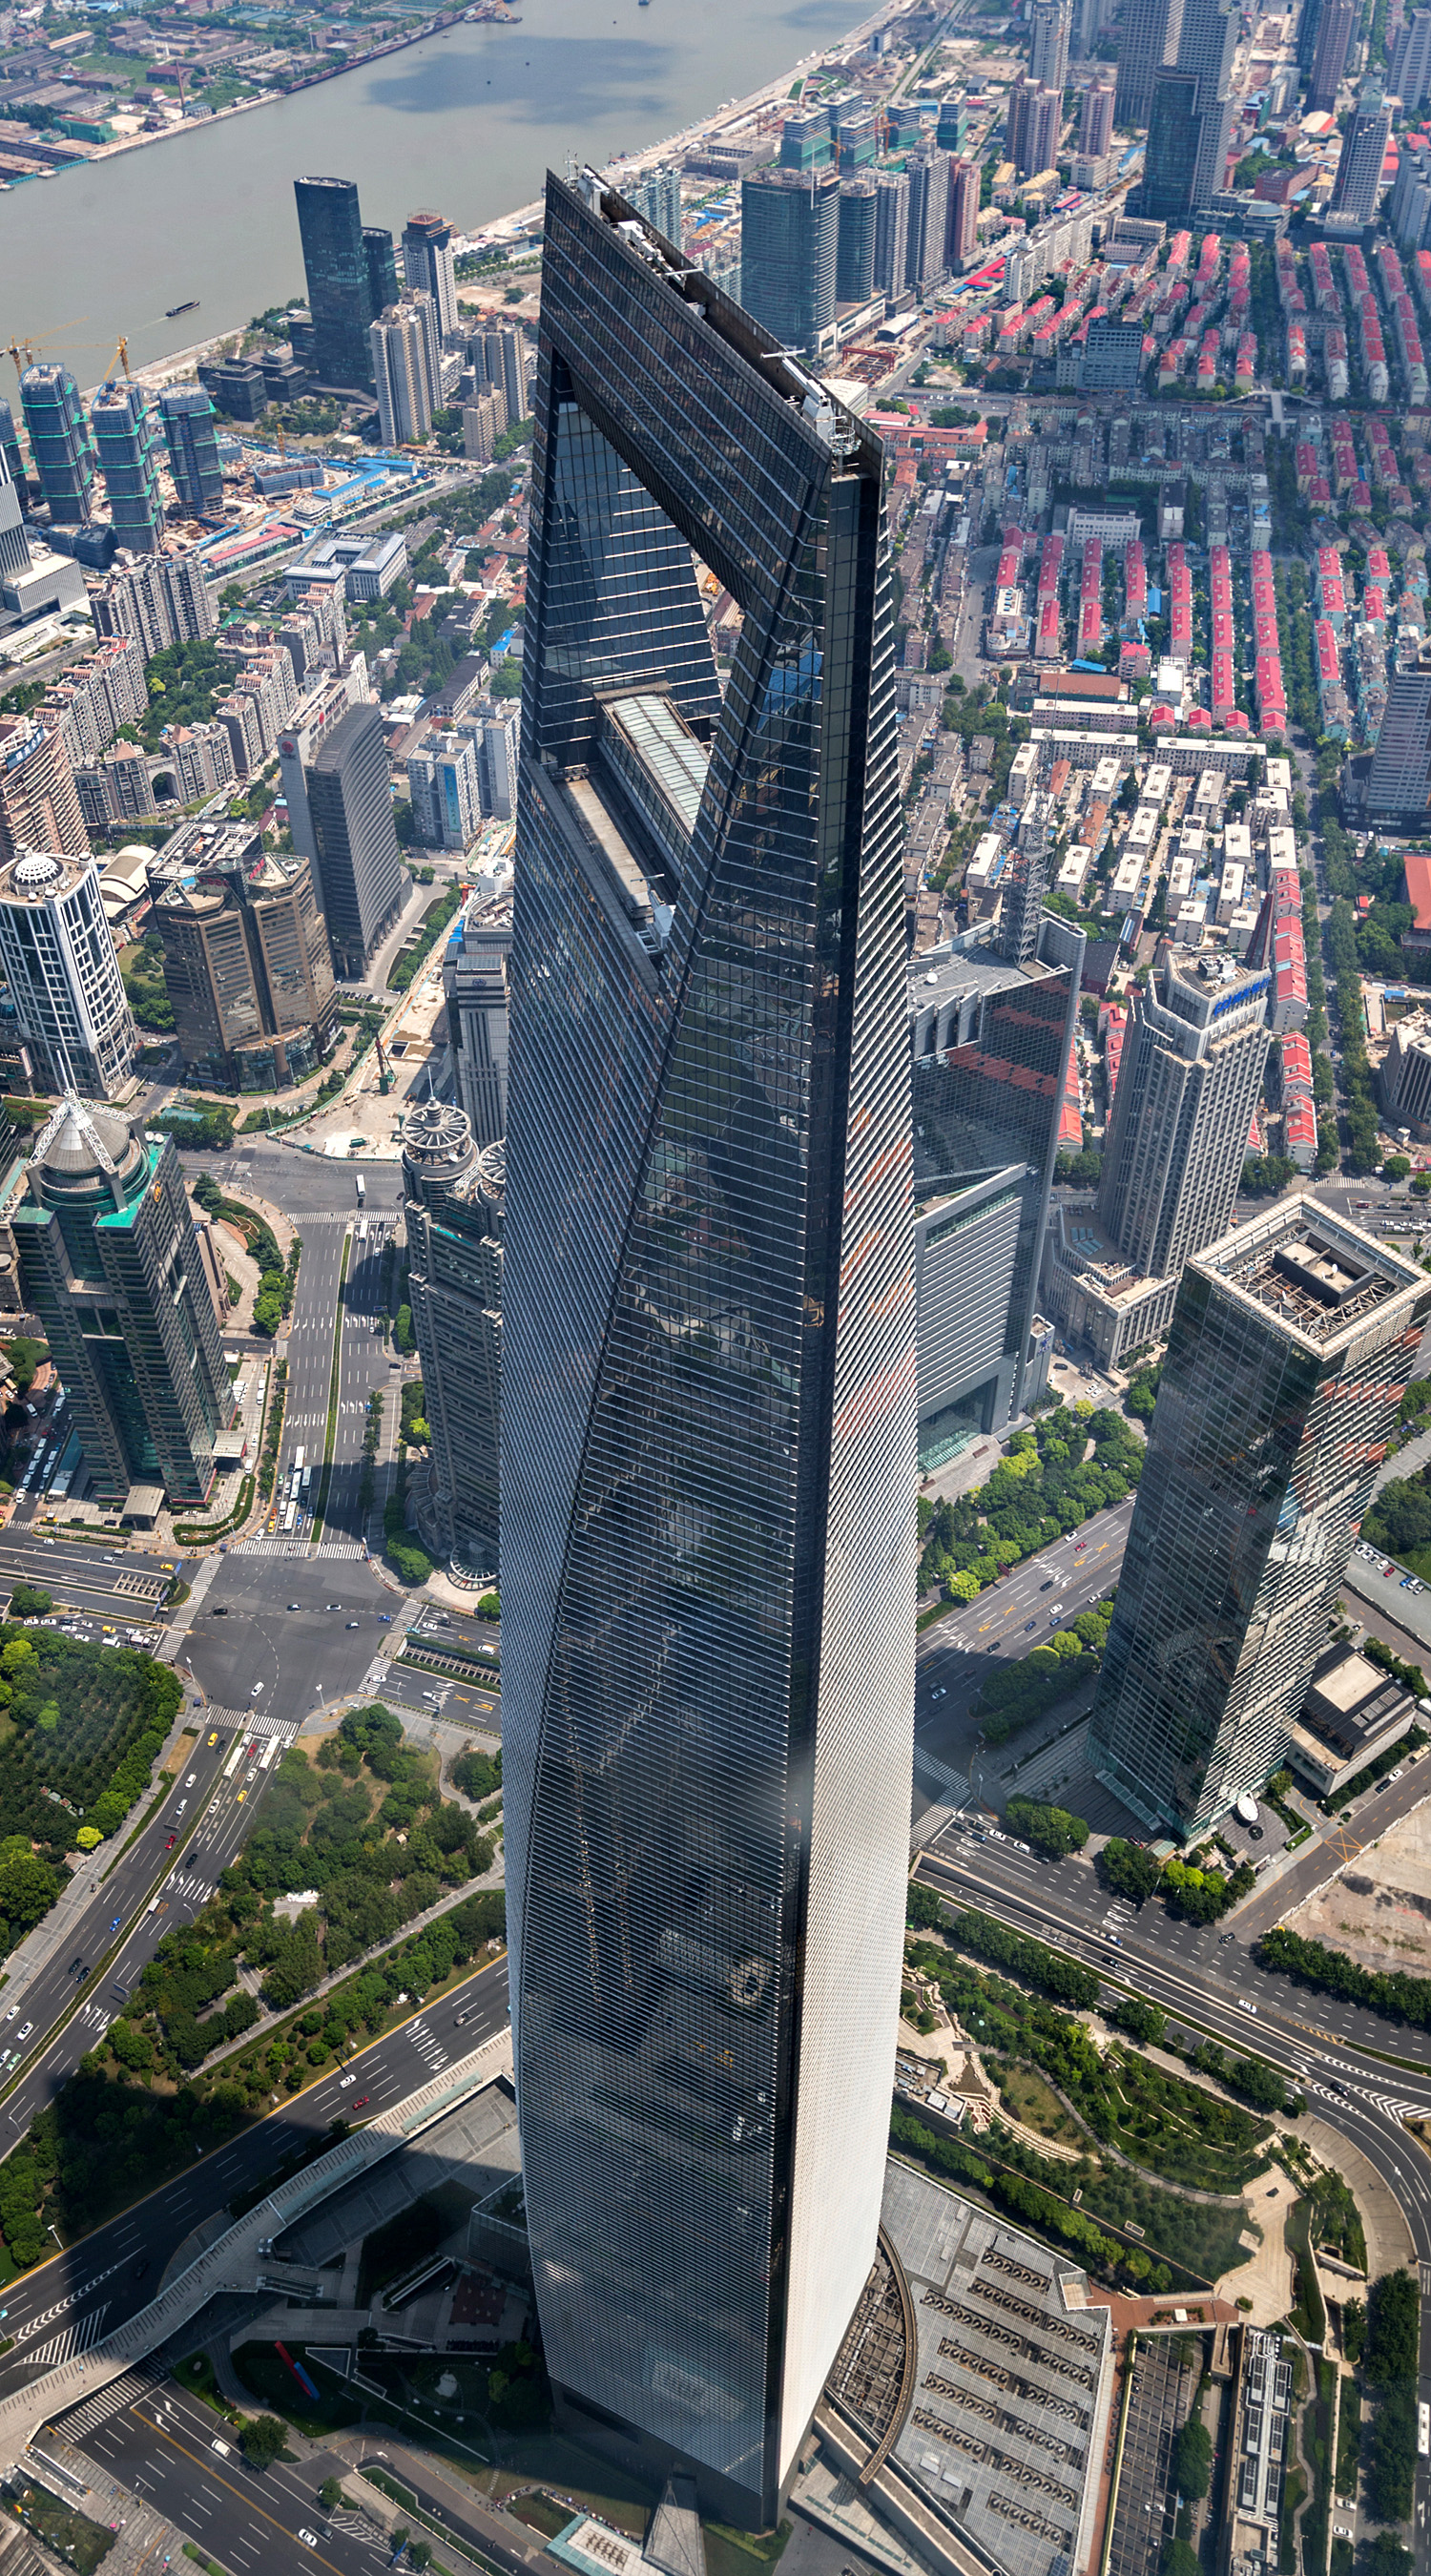 Shanghai World Financial Center, Shanghai - View from Shanghai Tower. © Mathias Beinling